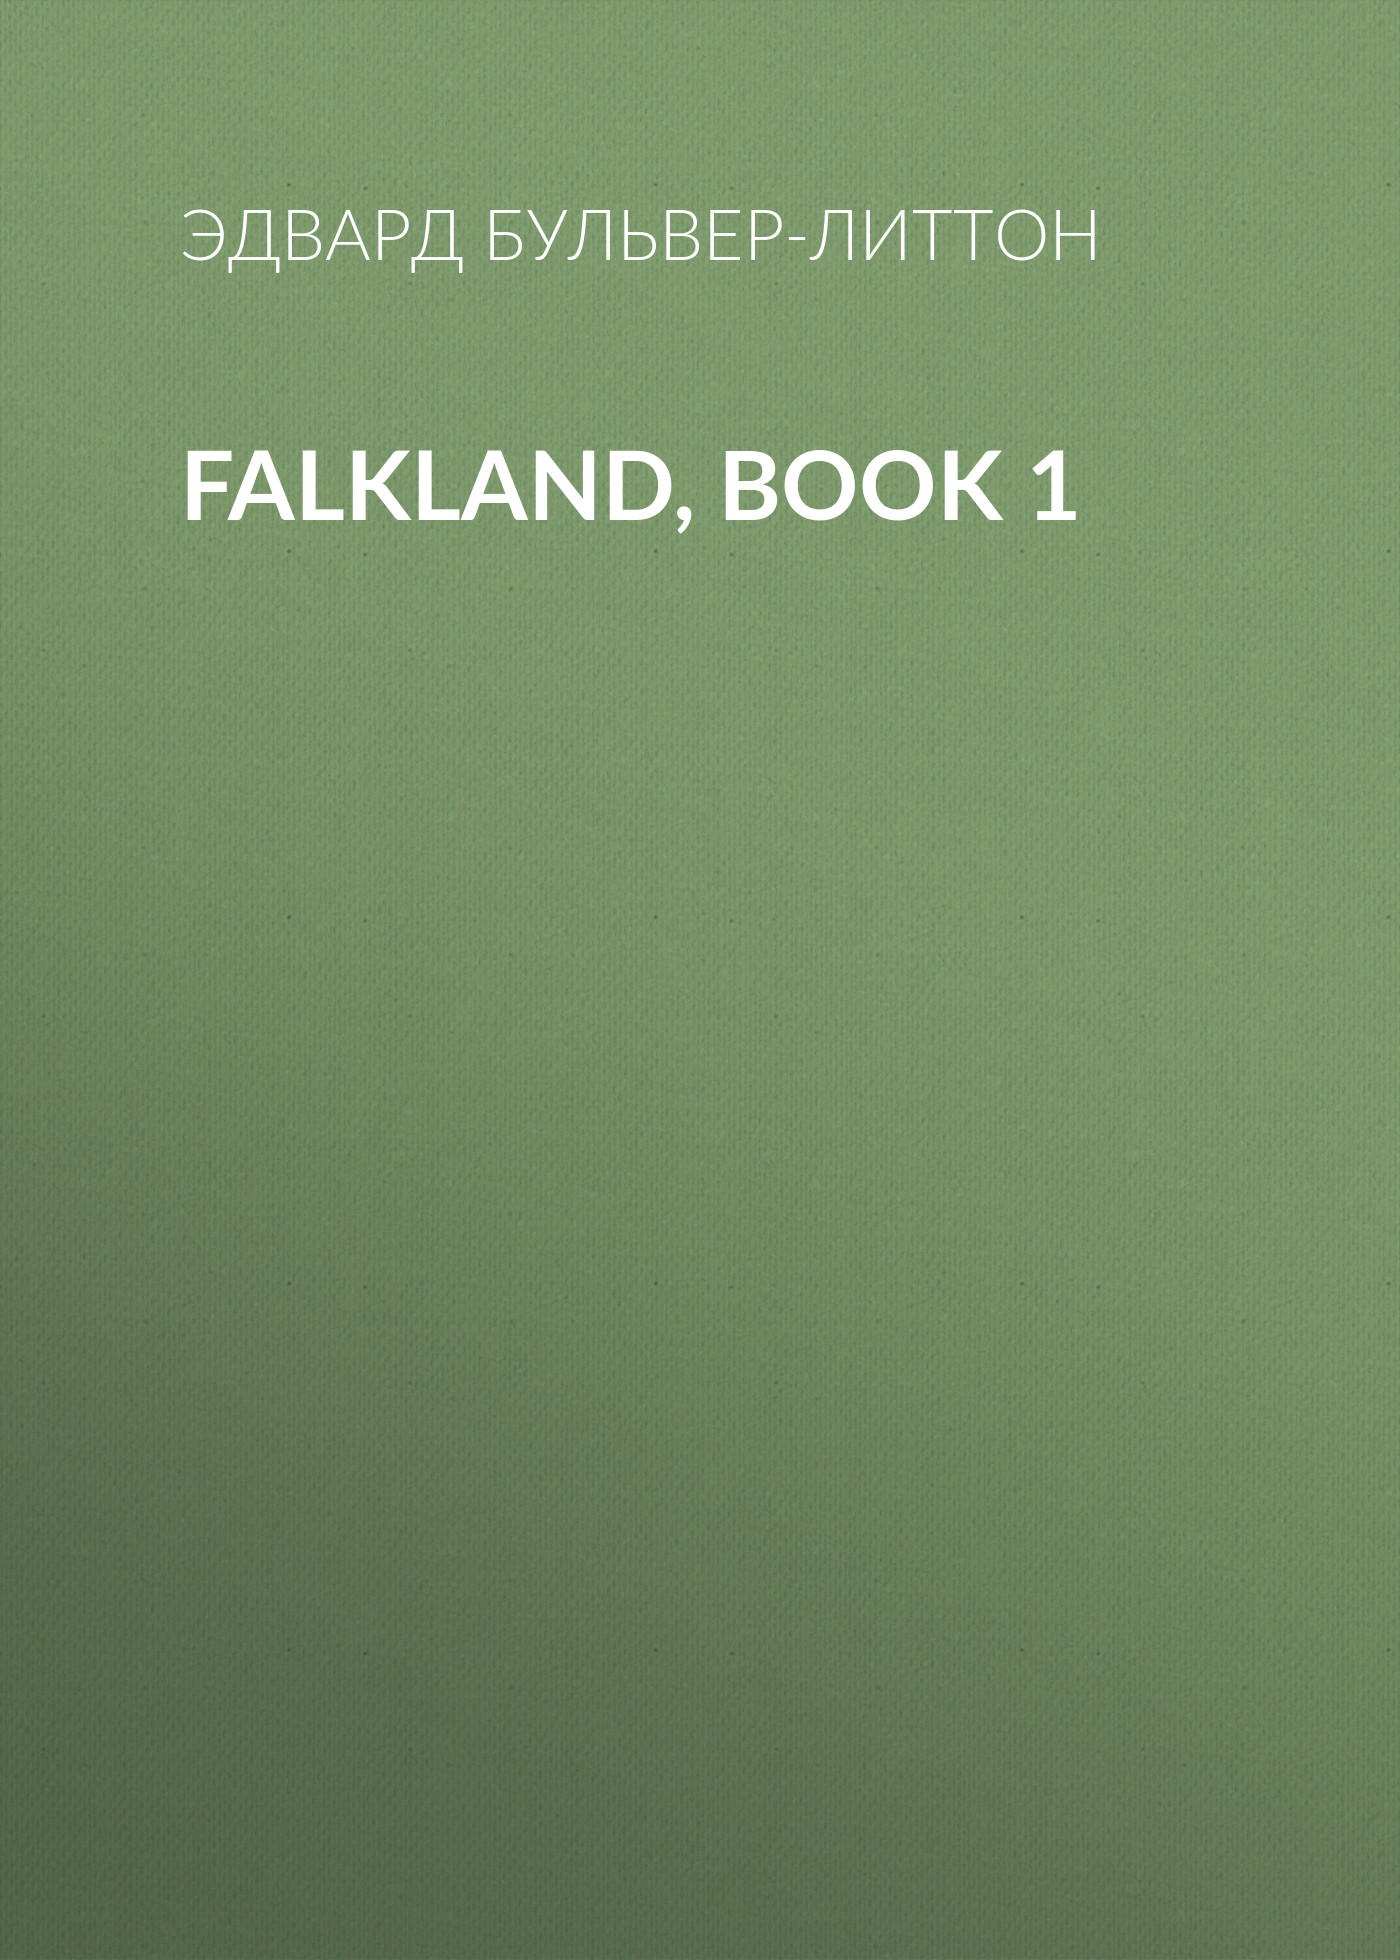 Книга Falkland, Book 1 из серии , созданная Эдвард Бульвер-Литтон, может относится к жанру Зарубежная фантастика, Литература 19 века. Стоимость электронной книги Falkland, Book 1 с идентификатором 35008825 составляет 0 руб.